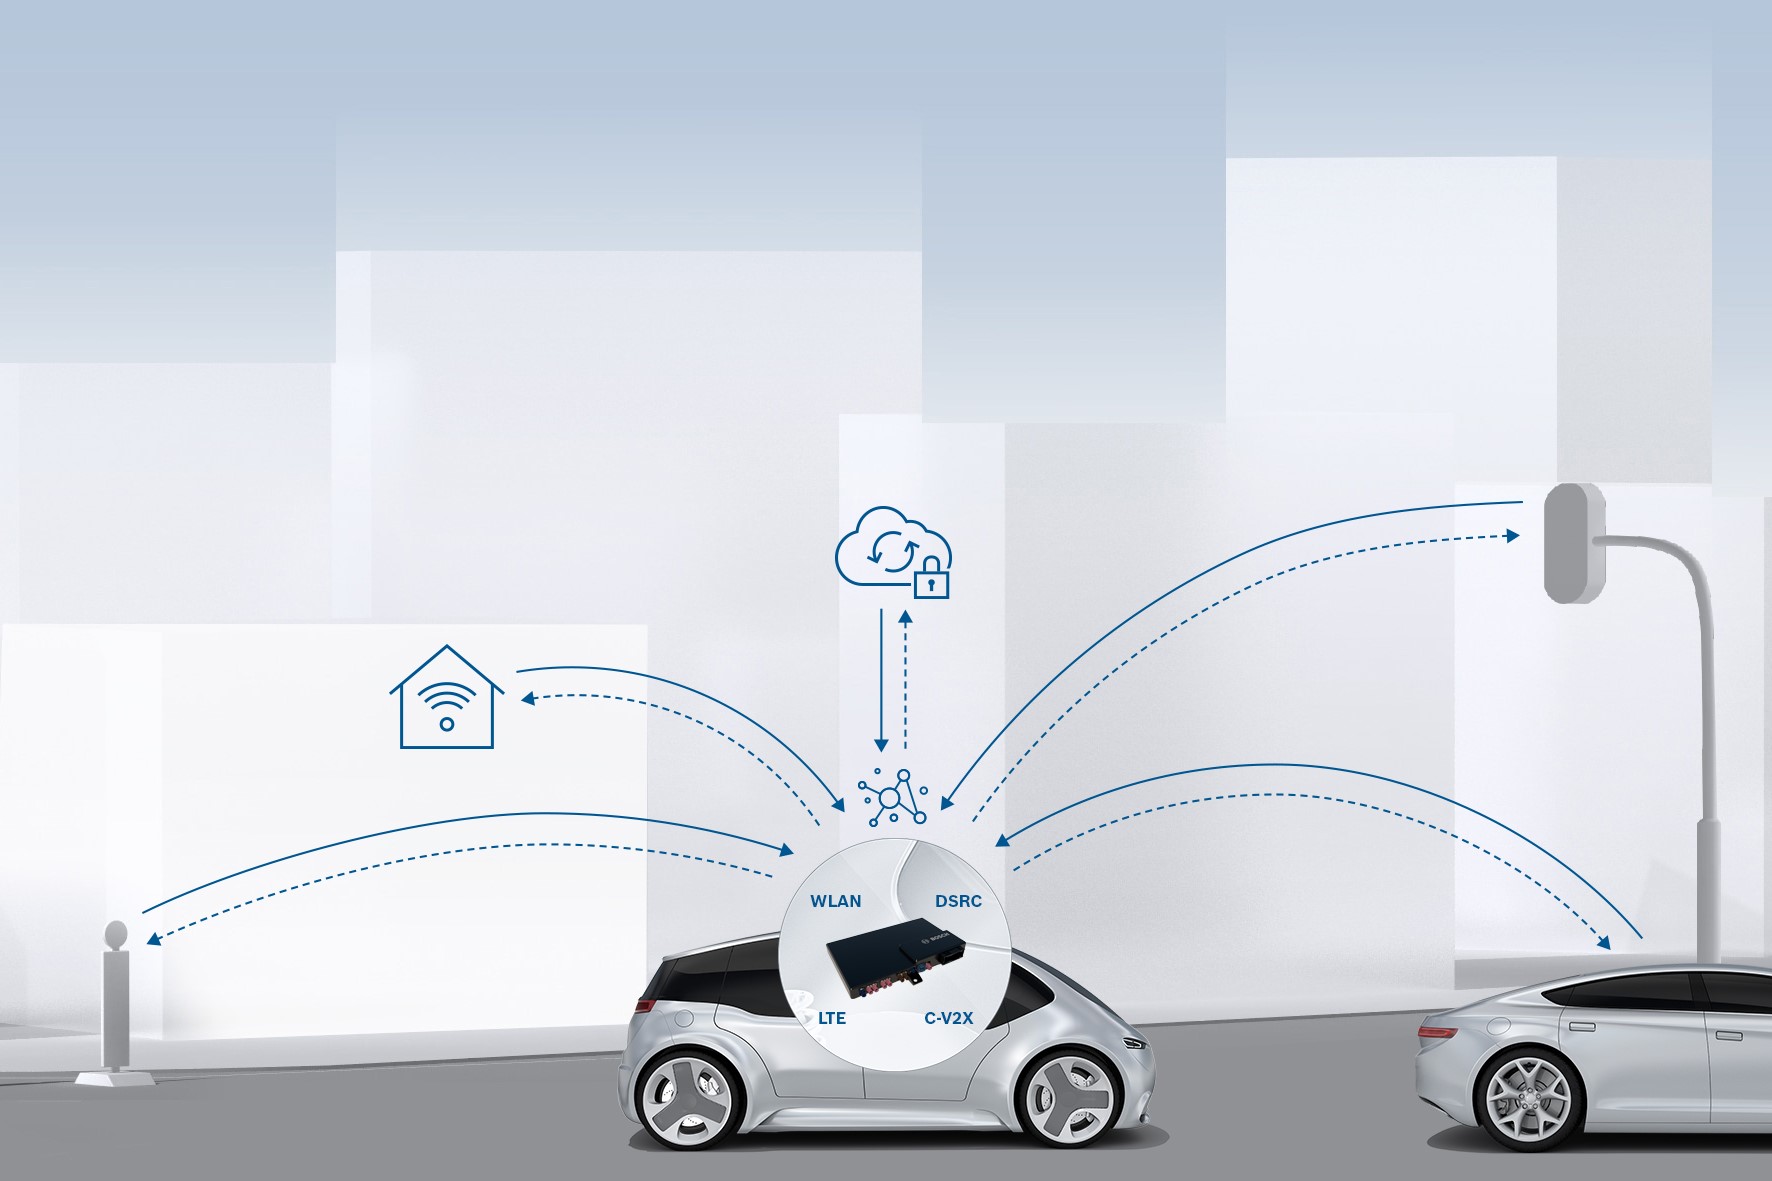 Bosch et Veniam assurent une parfaite communication « Vehicle-to-Everything » (V2X)